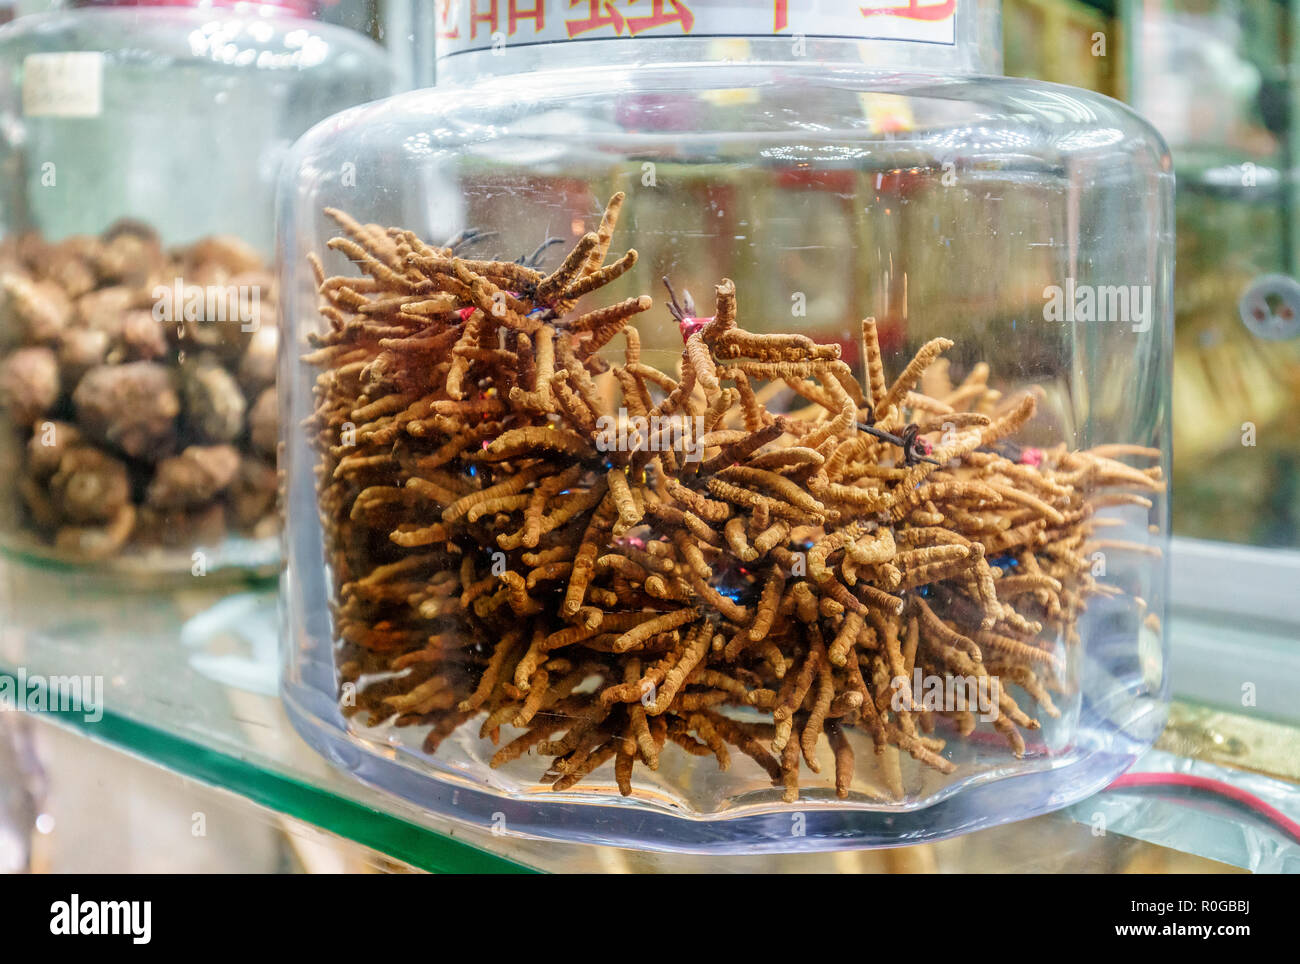 Cordyceps es considerado hongo medicinal en clásico pharmacologies asiáticos, como el de medicamentos tradicionales chinos y tibetanos. Secado c Foto de stock